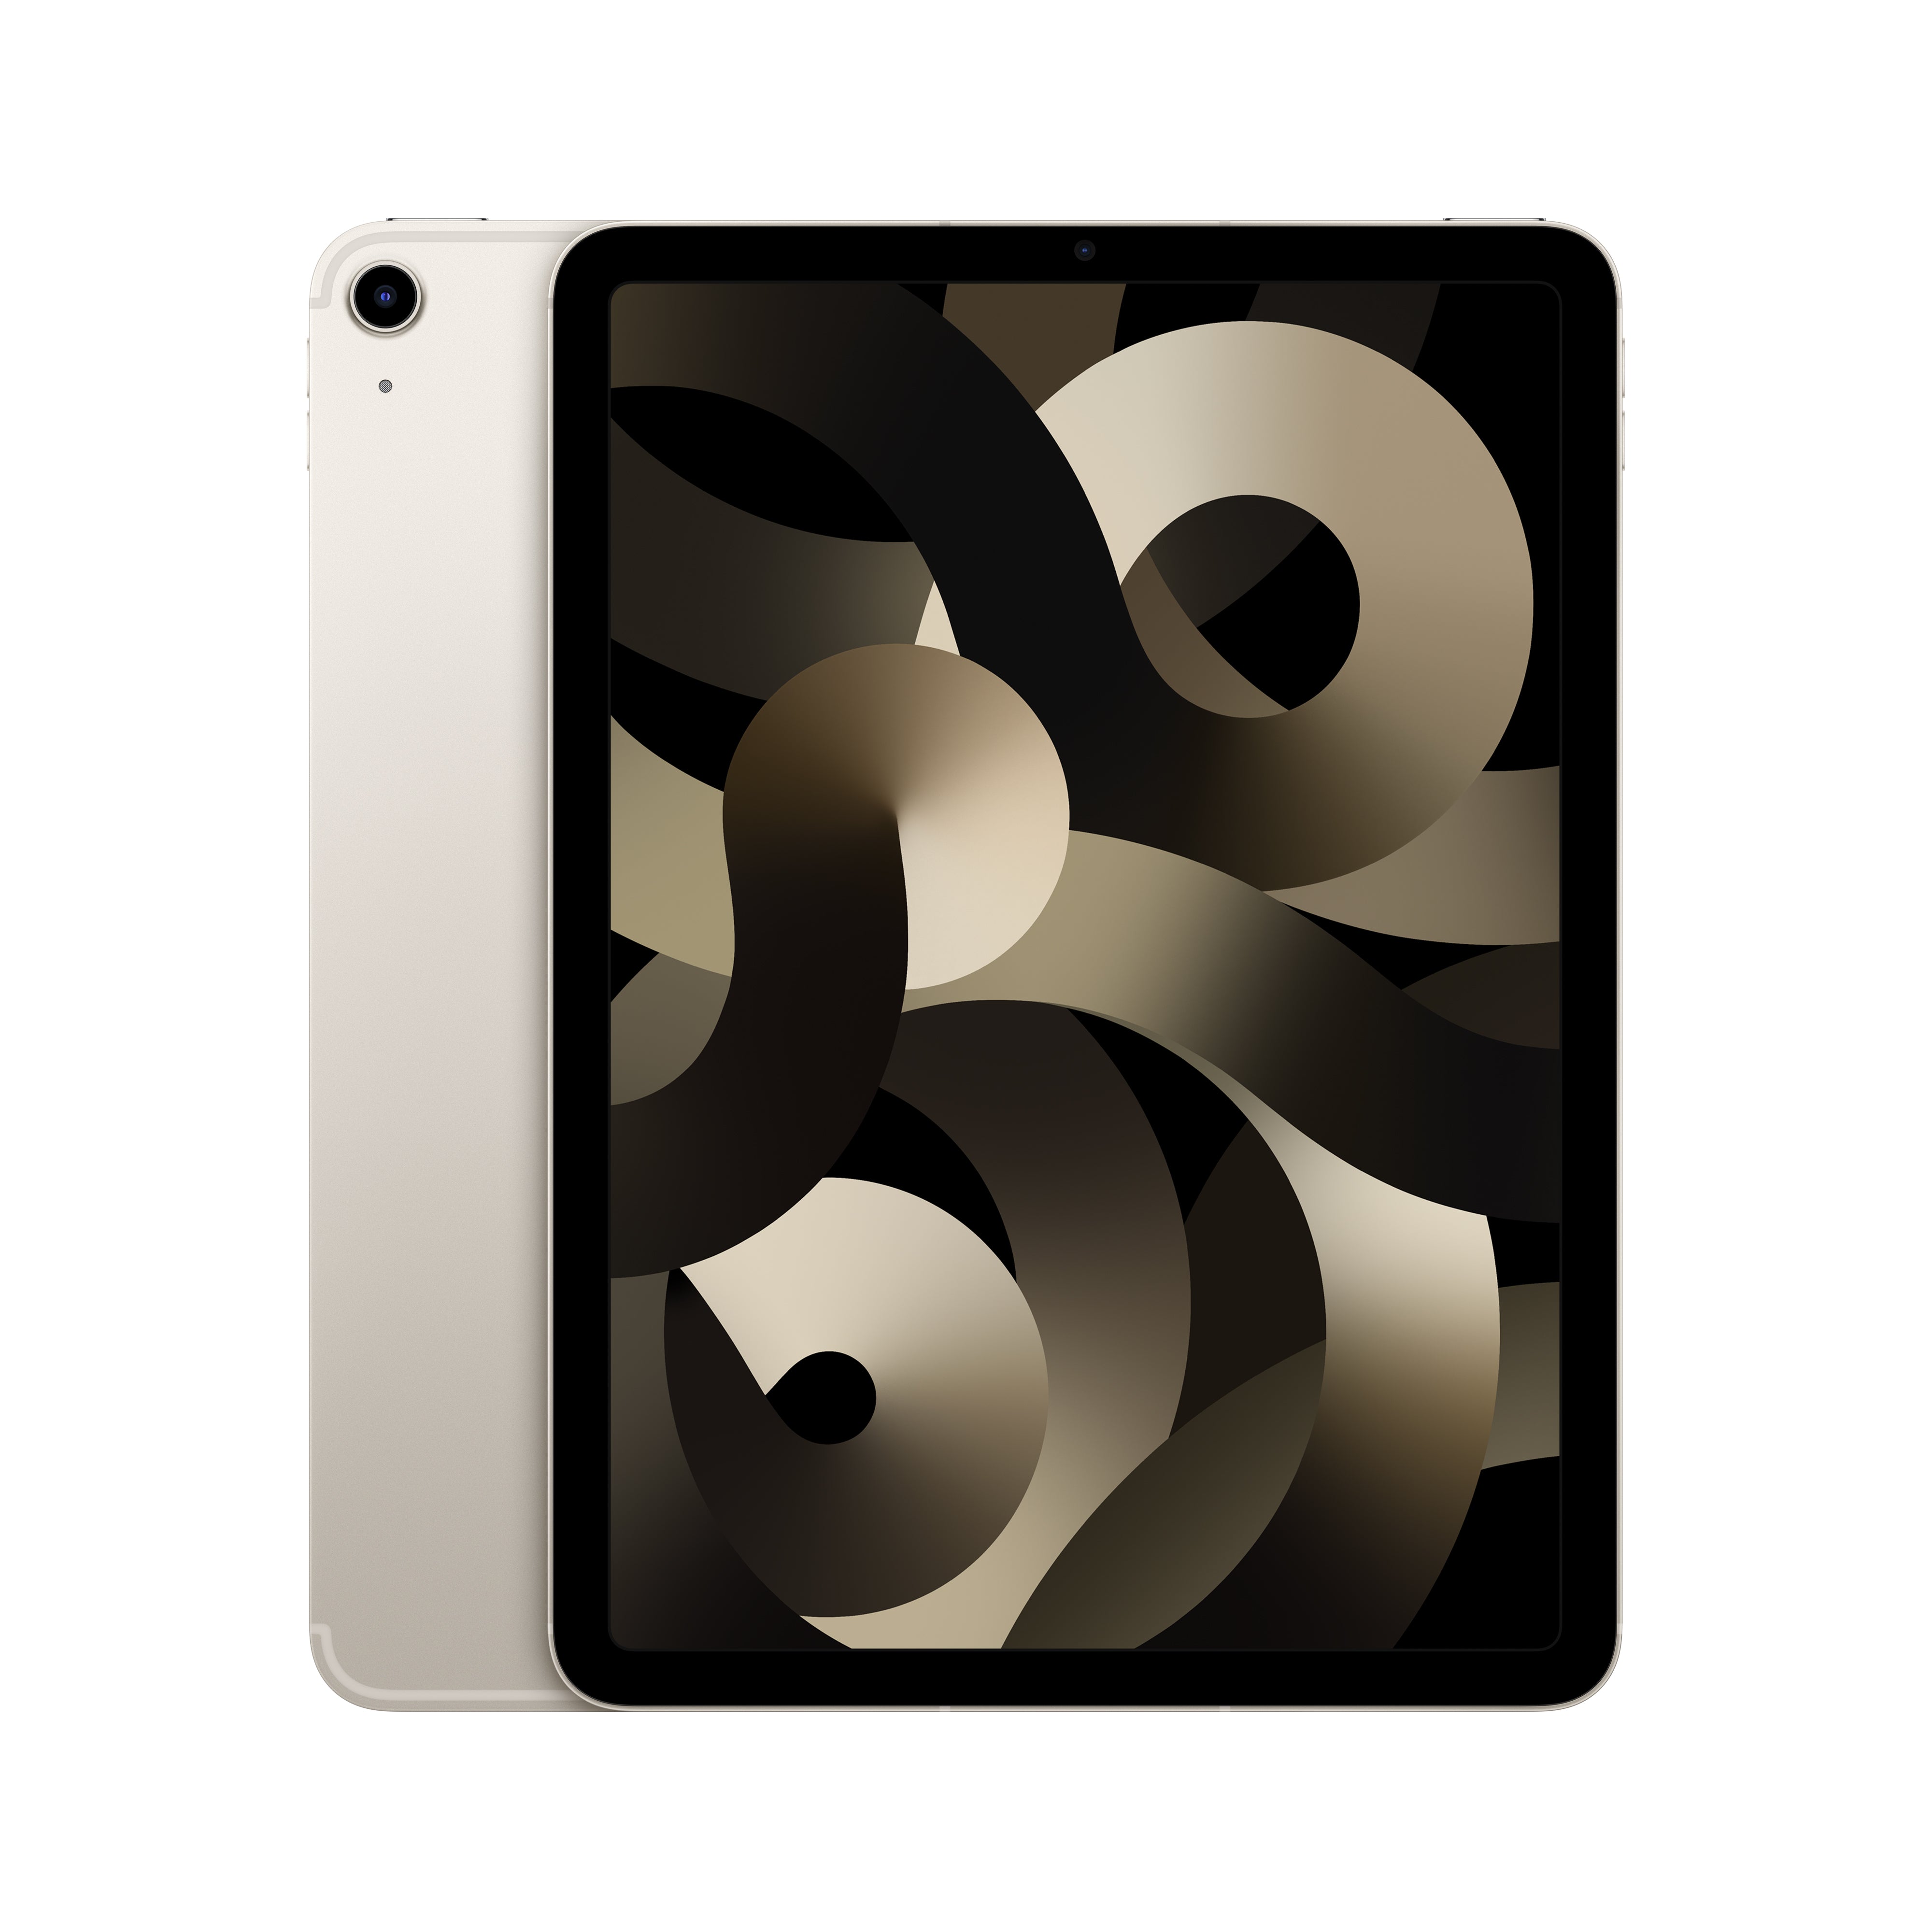 iPad Air 5th Generation WiFi 256GB - Starlight